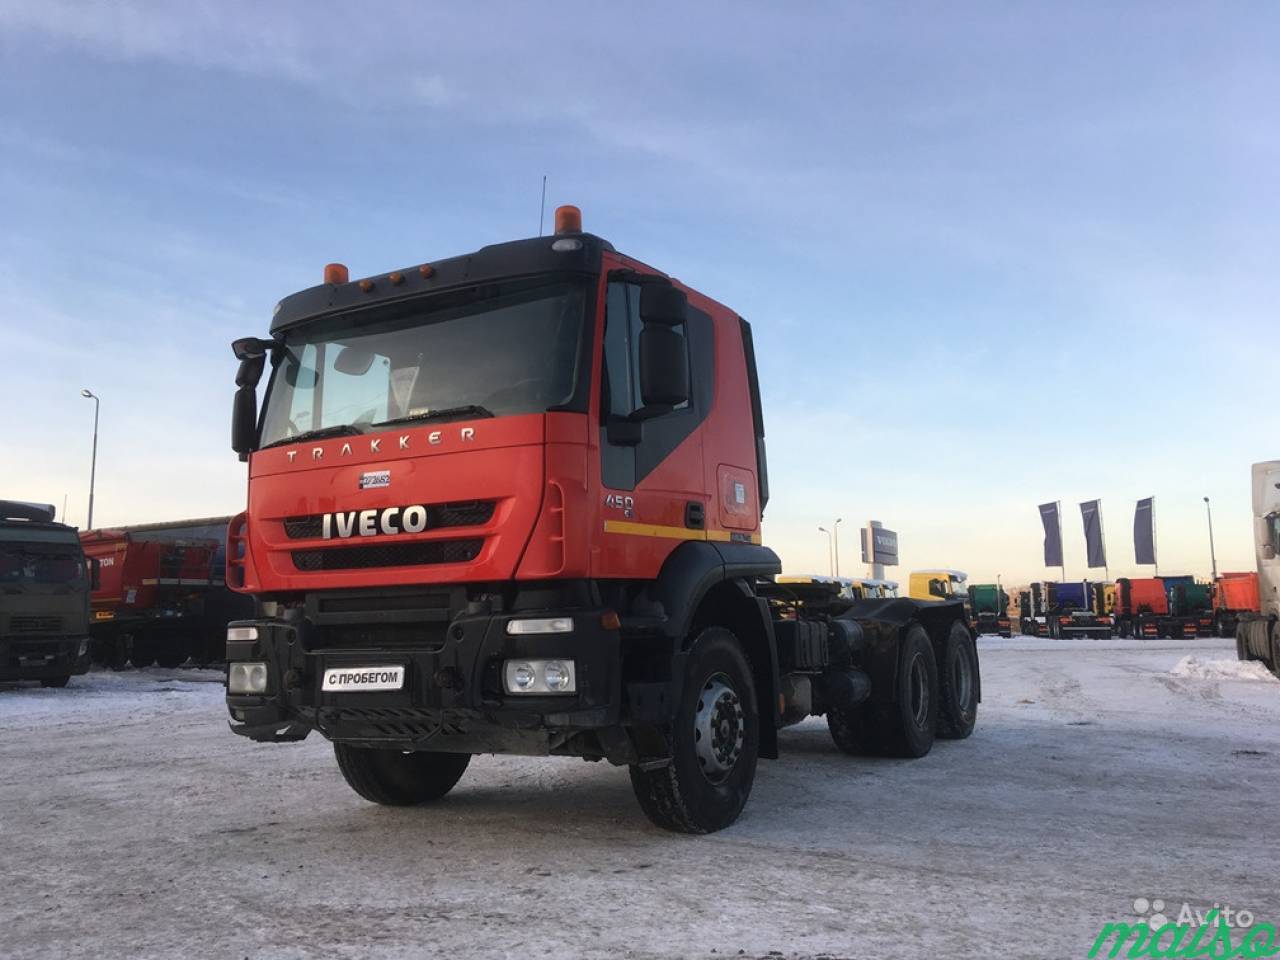 Iveco AMT 633911, Trakker 6x4, ID272652 в Санкт-Петербурге. Фото 3